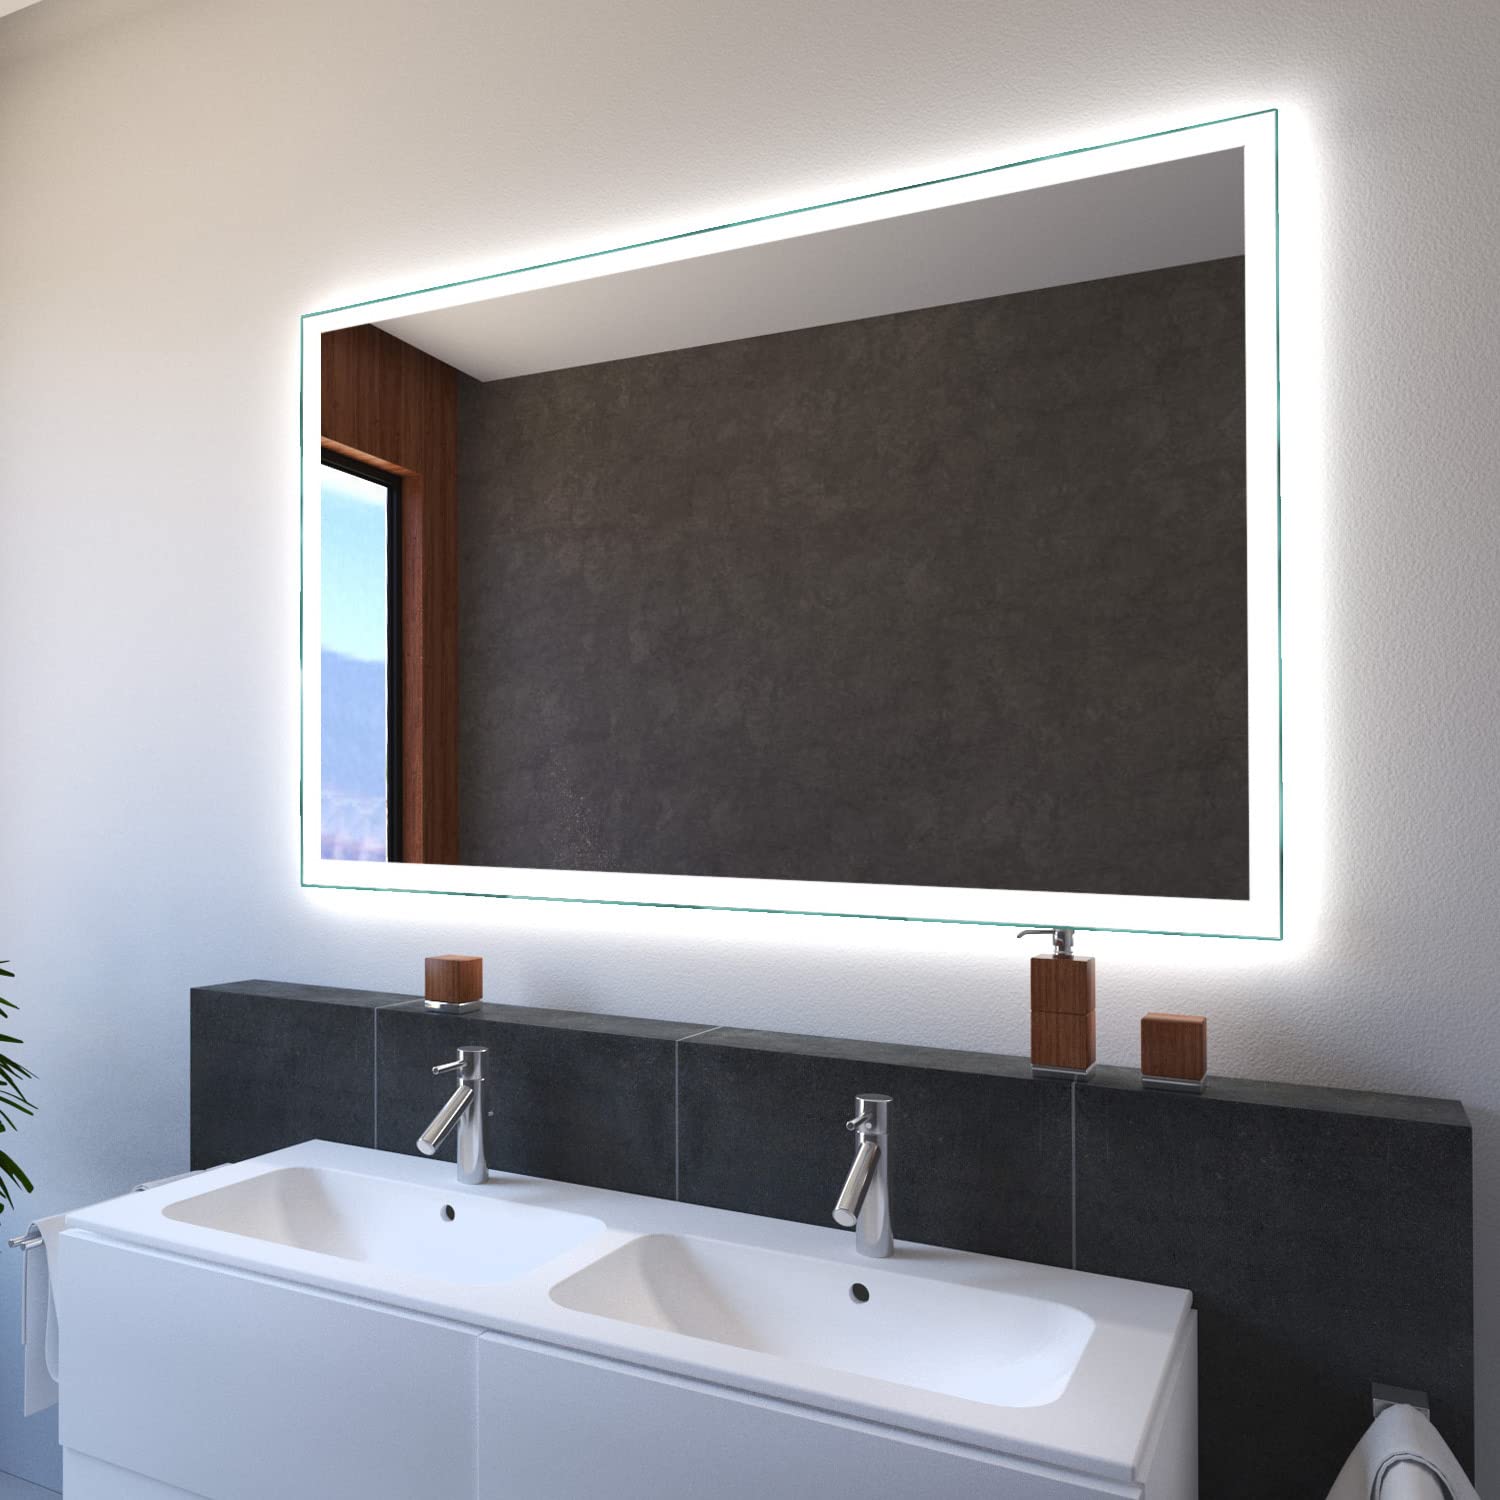 SARAR Wandspiegel mit LED-Beleuchtung 60x60cm Made in Germany Designo MA4110 Badspiegel Spiegel mit Beleuchtung Badezimmerspiegel nach-auf Maß